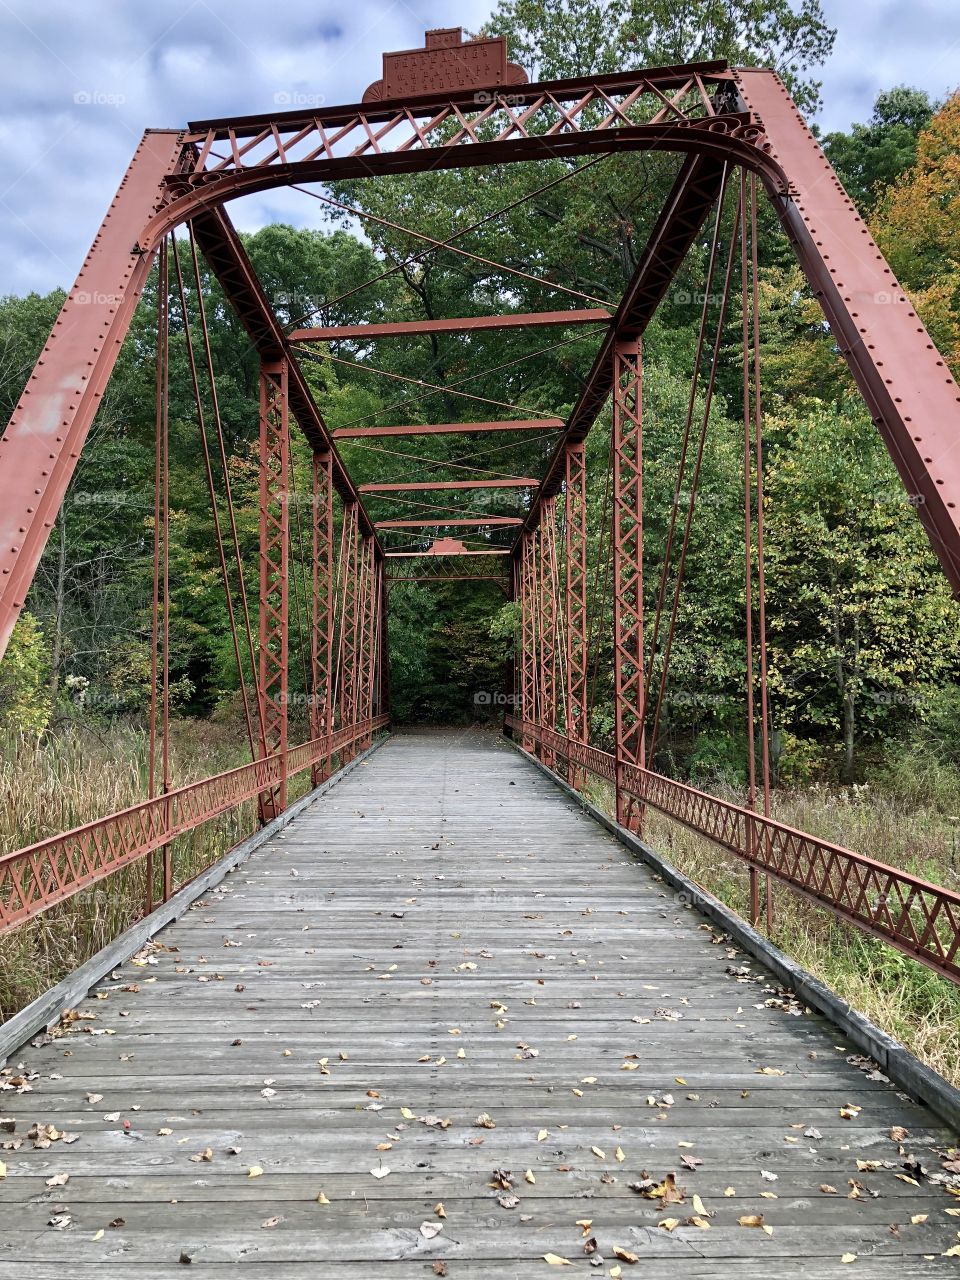 Metal and wood bridge